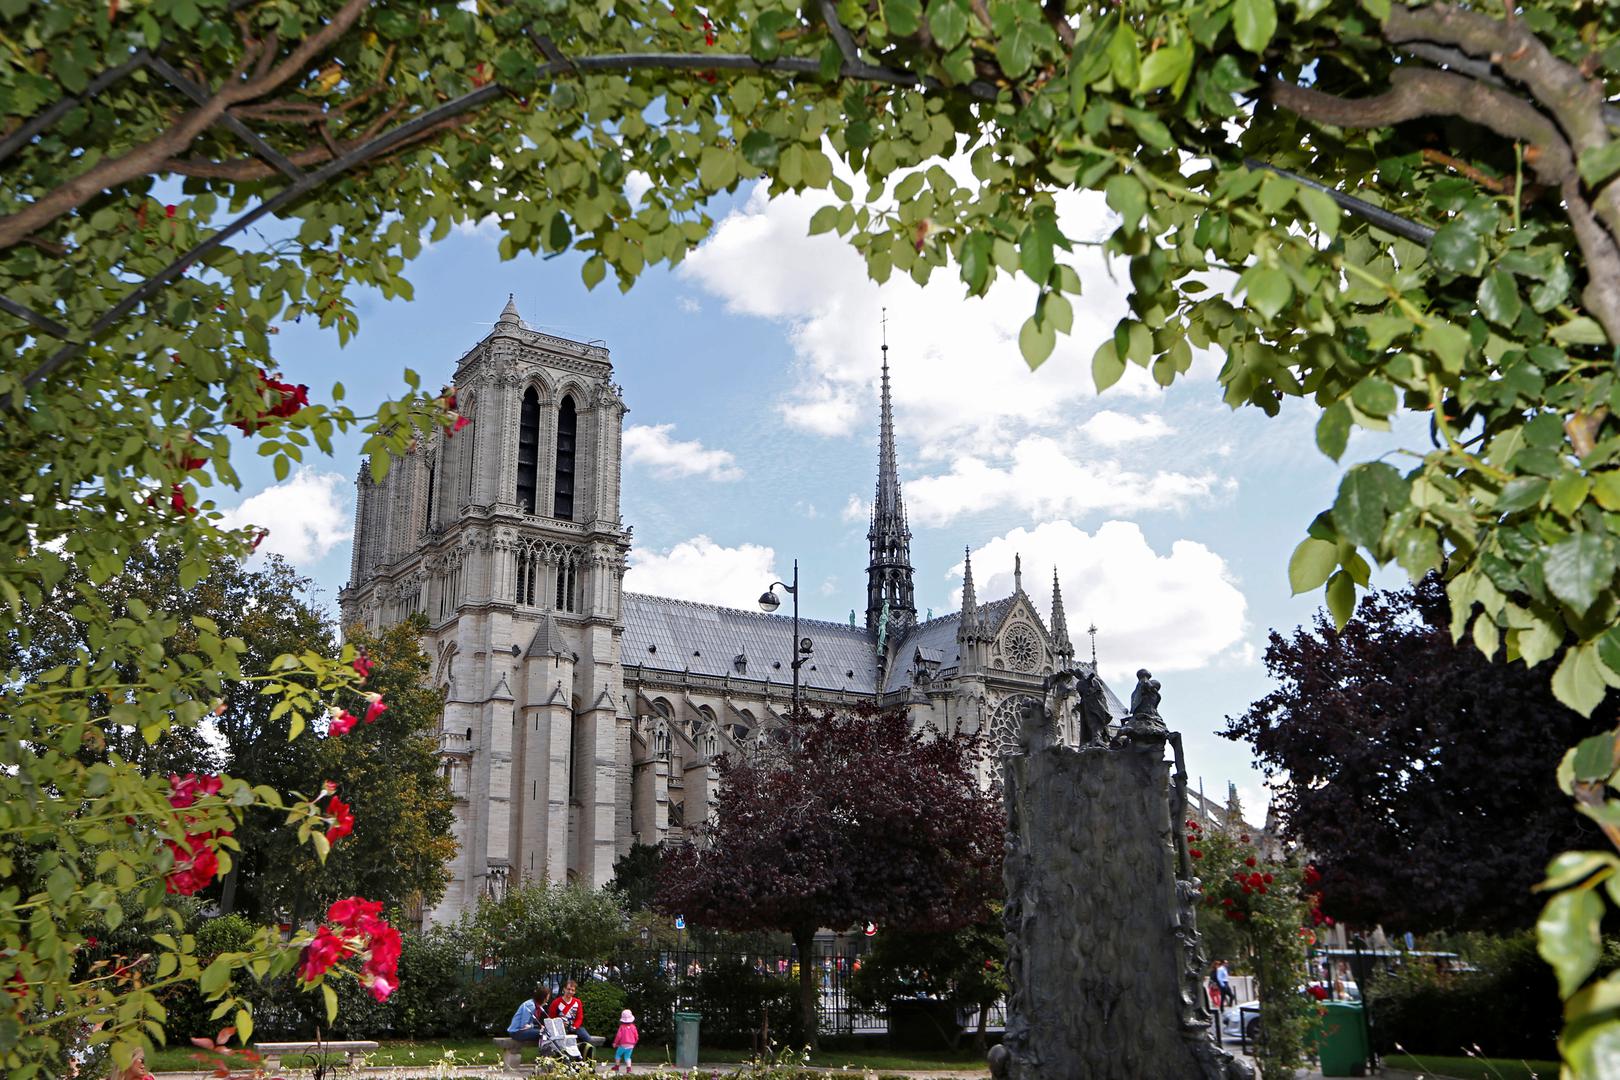 Victor Hugo iskoristio je katedralu kao mjesto radnje svoga romana "Zvonar crkve Notre-Dame", a po romanu je snimljeno nekoliko igranih i animiranih filmova.

